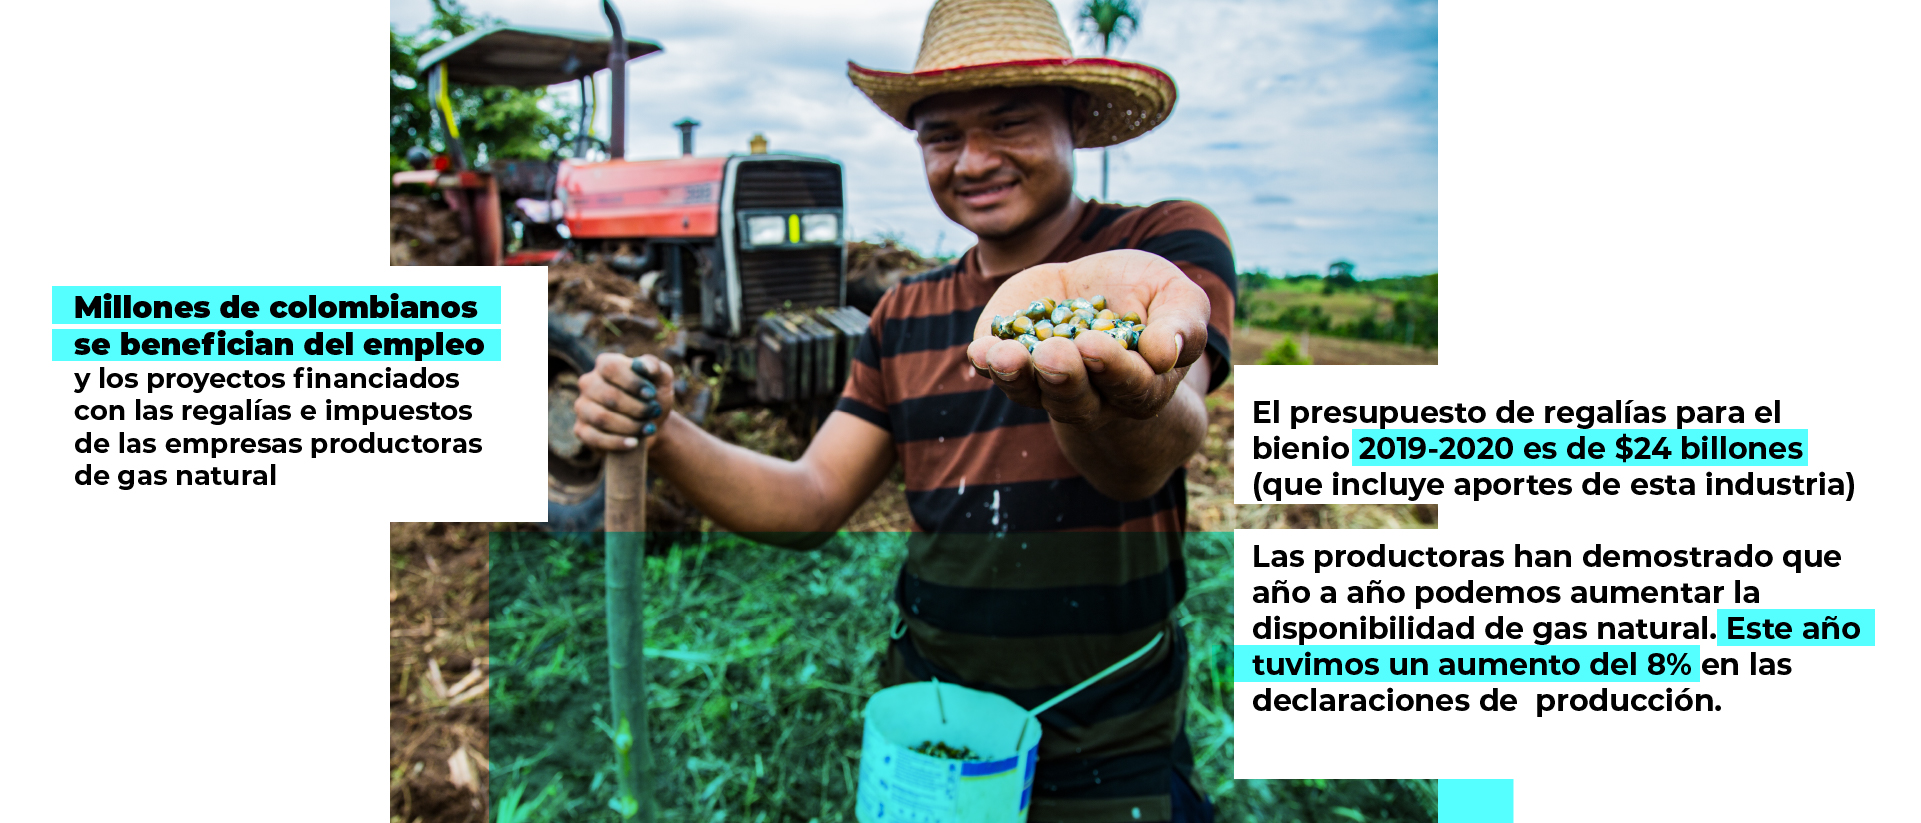 Millones de colombianos se benefician del empleo y los proyectos financiados con las regalías e impuestos de las empresas productoras de gas natural